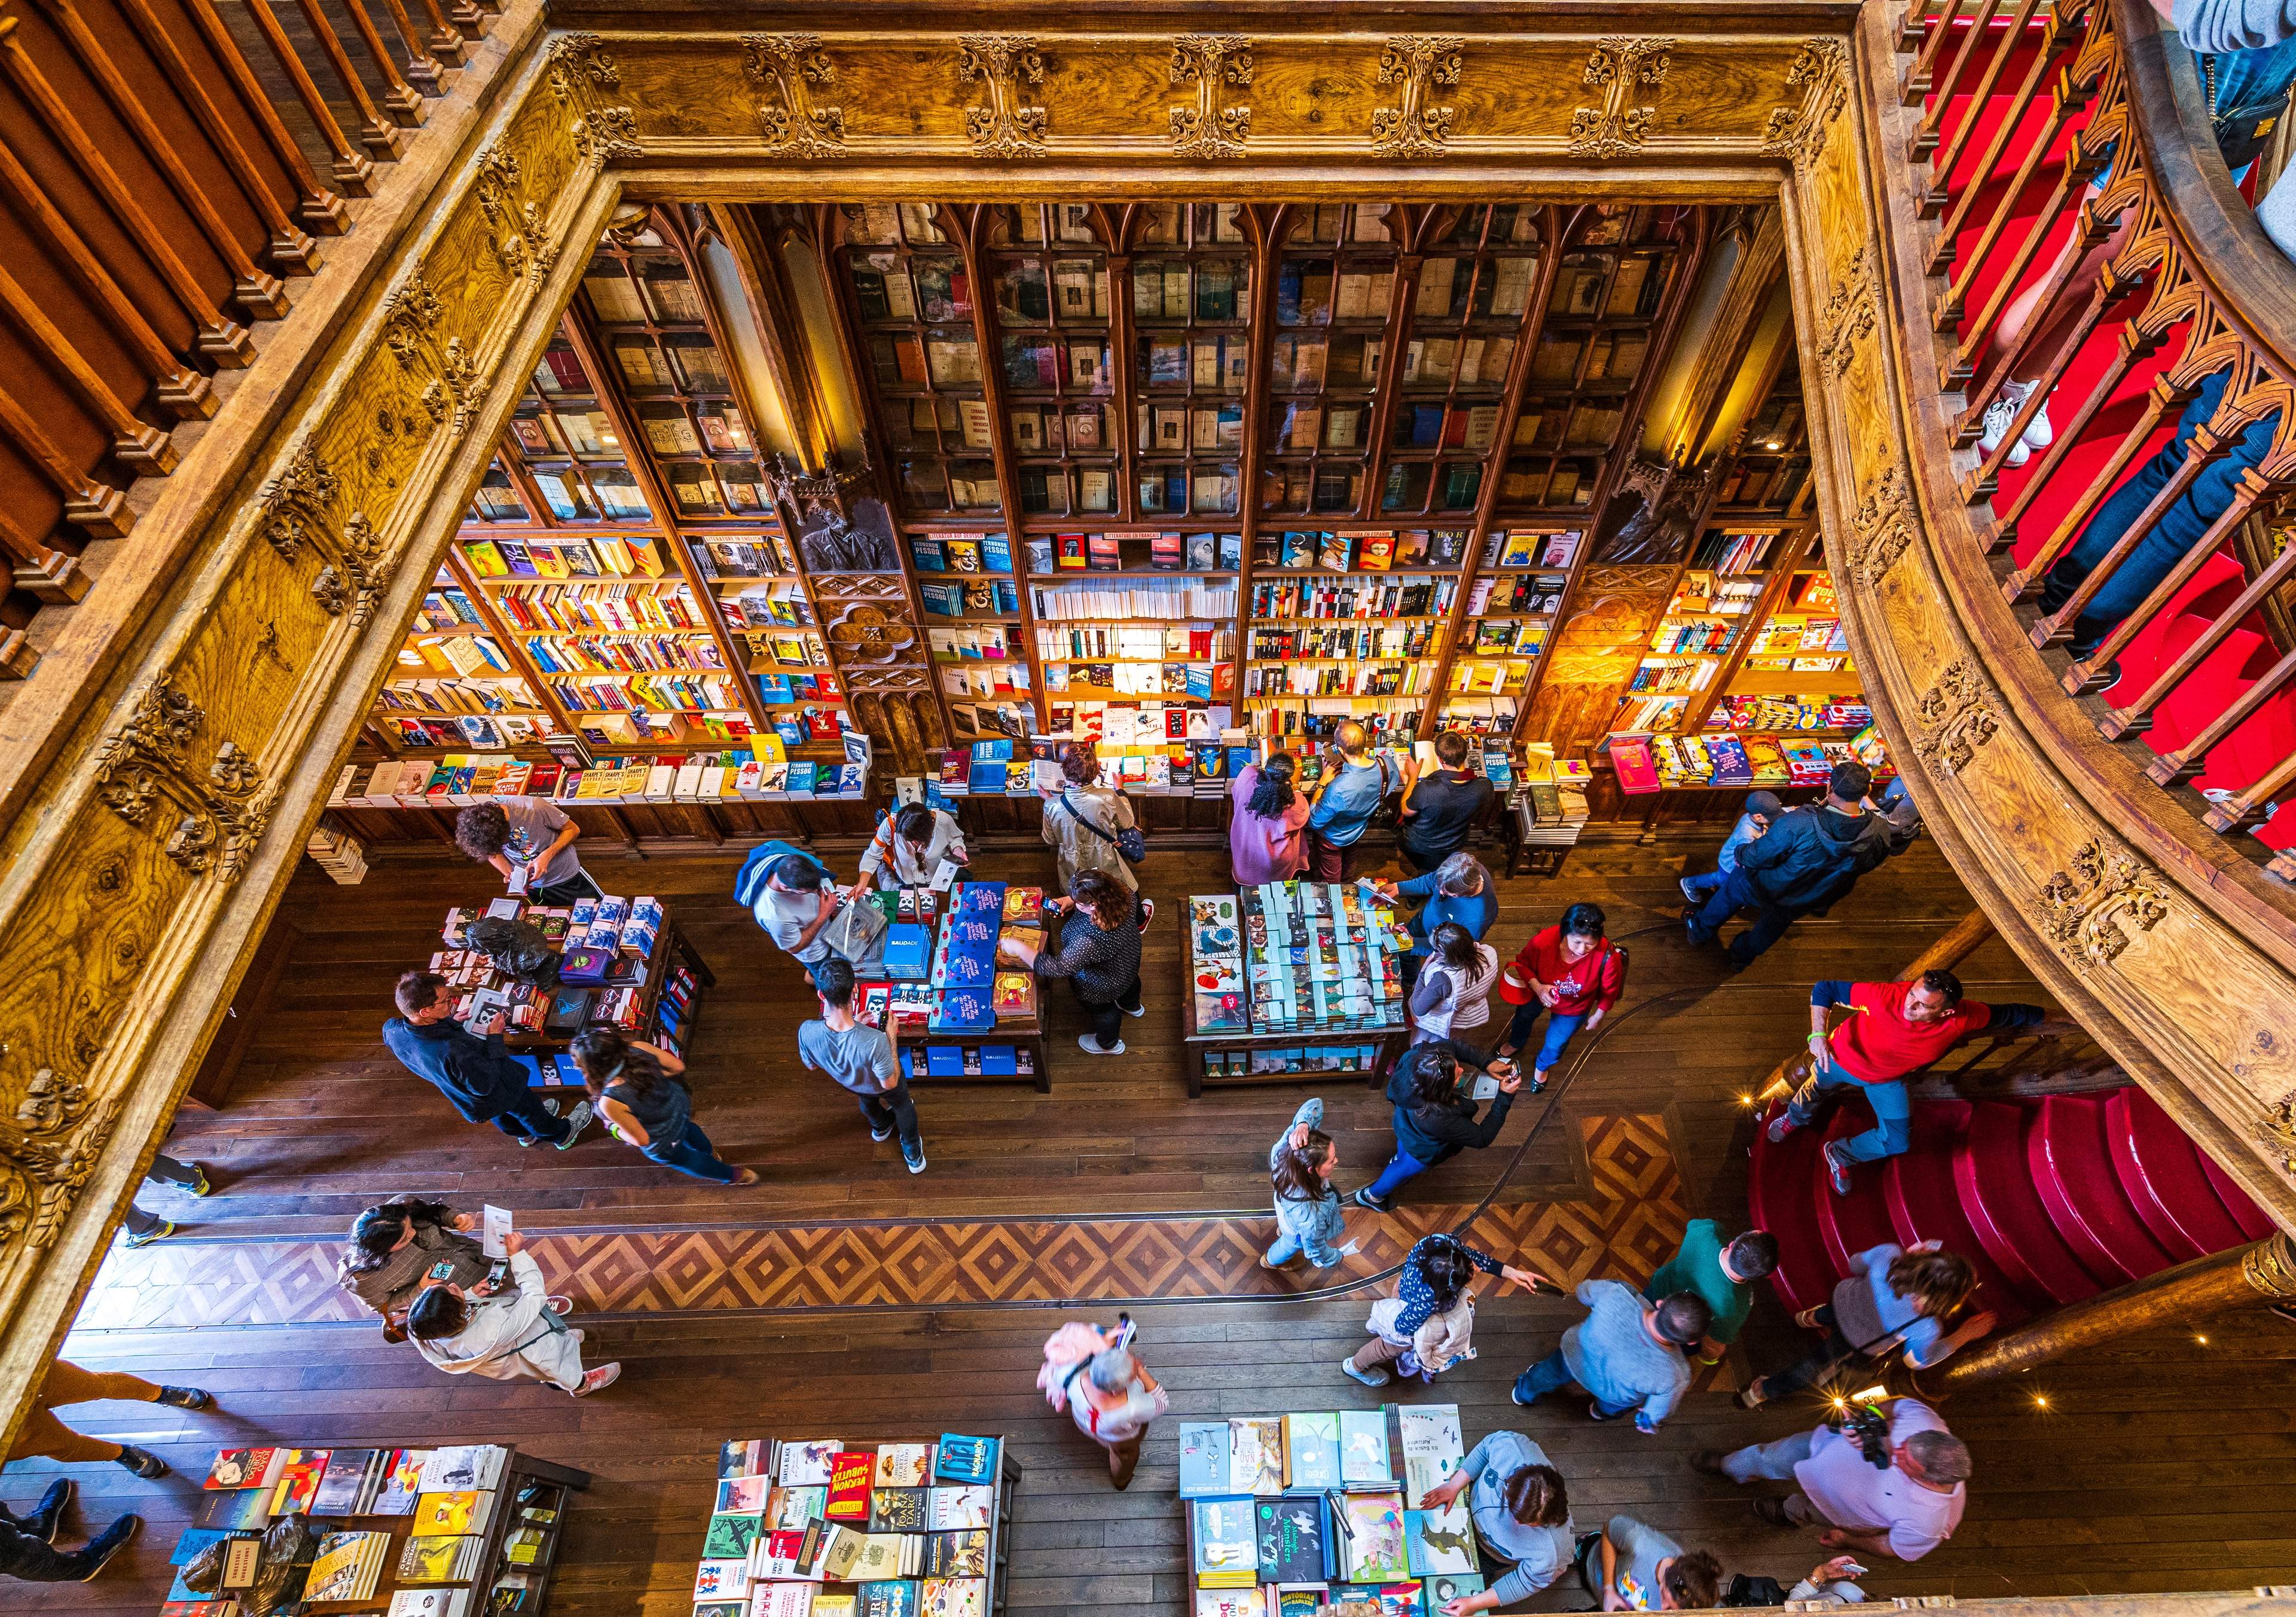 Livraria Lello - a famous, old book store in Porto, Portugal